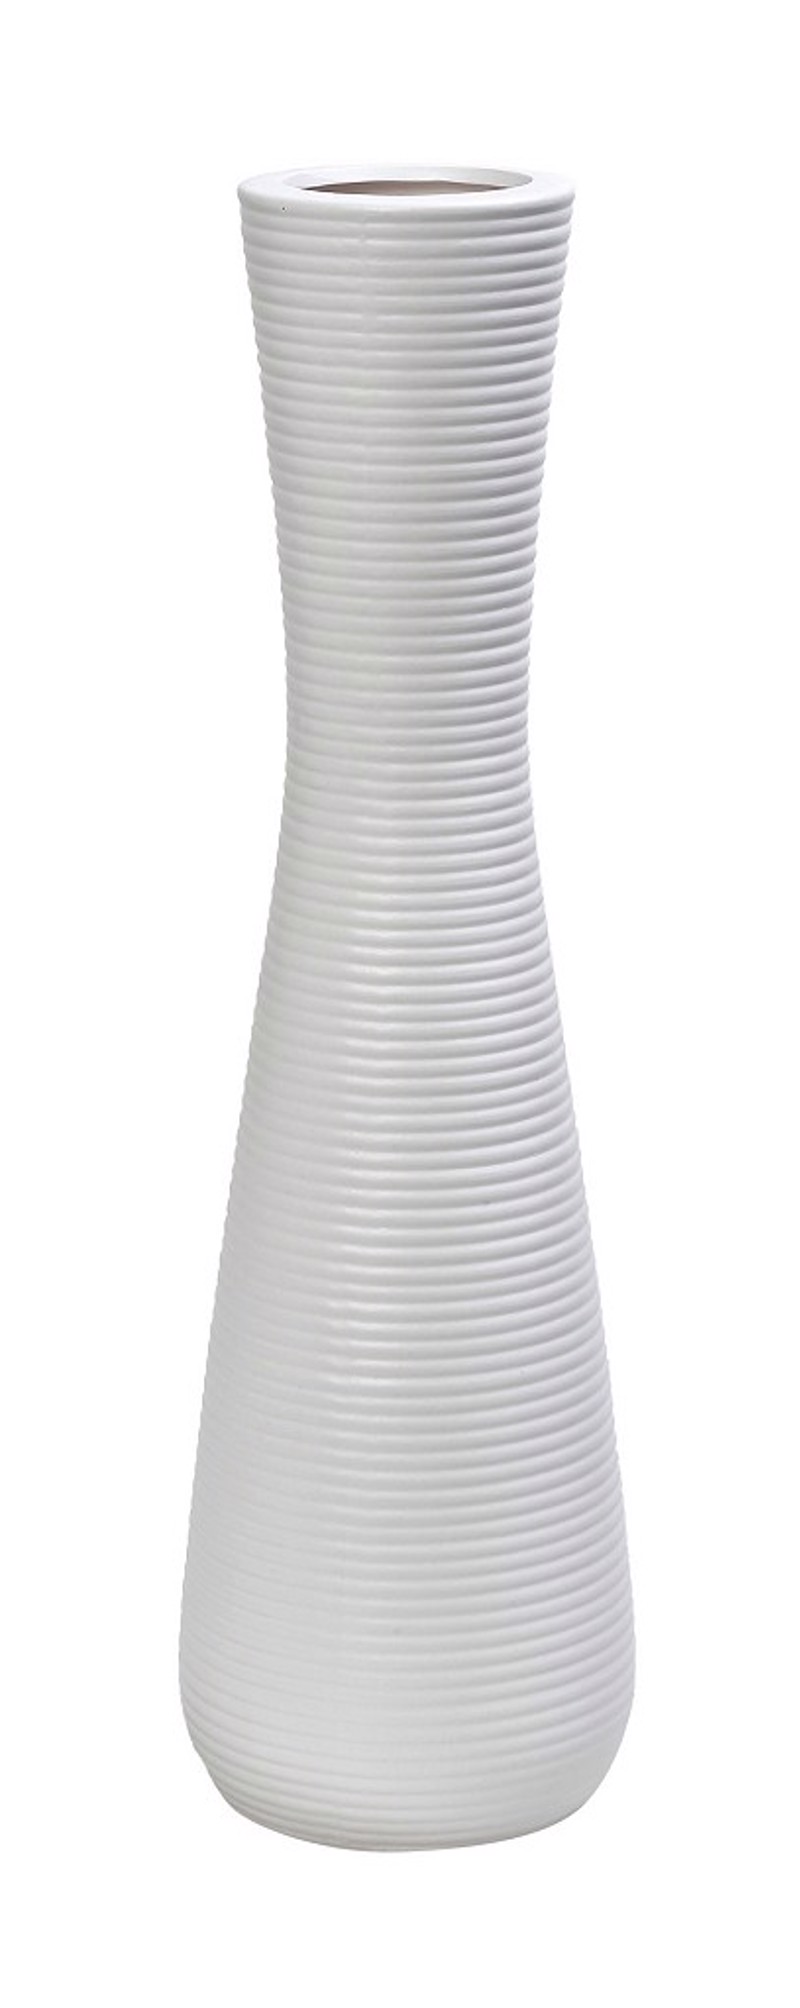 Βάζο Κεραμικό Λευκό με Ραβδώσεις Φ16.5x58cm MIG140 Espiel